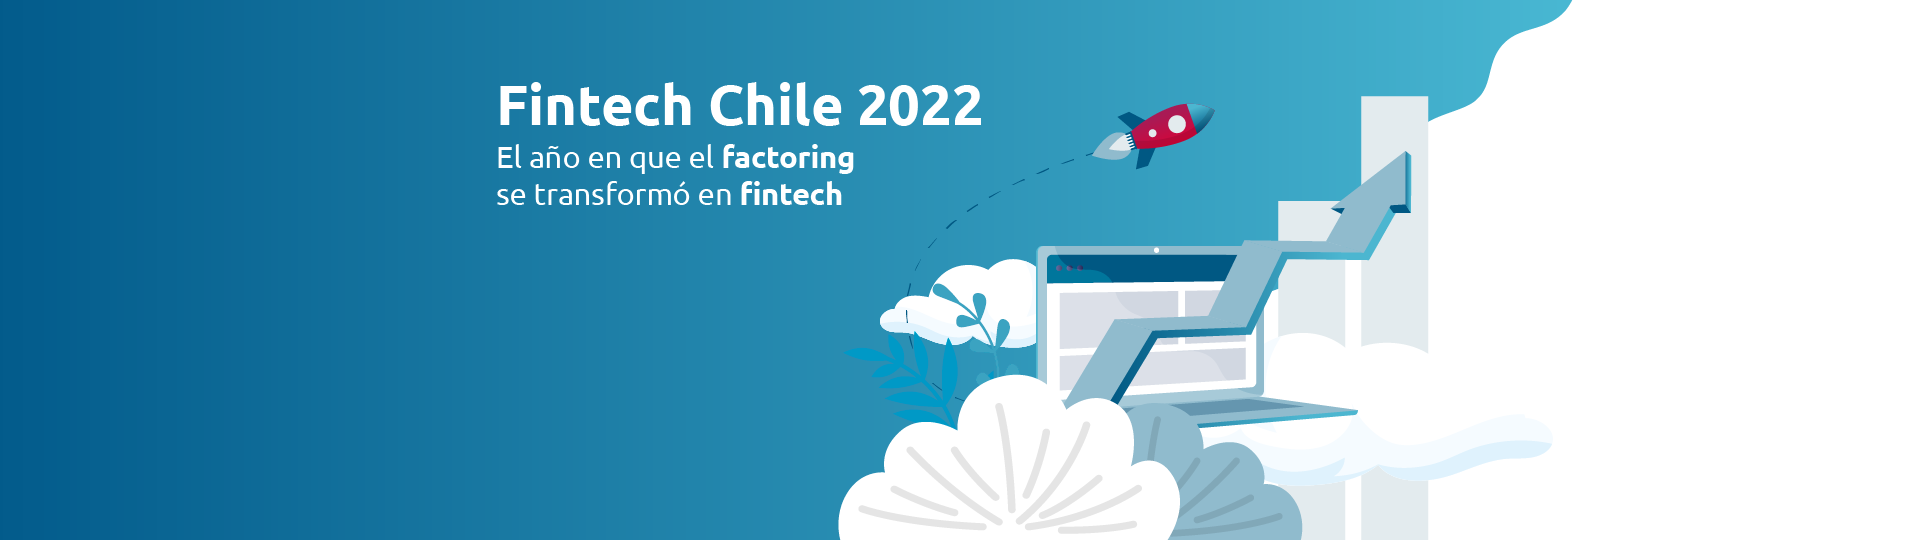 Ebook Fintech Chile